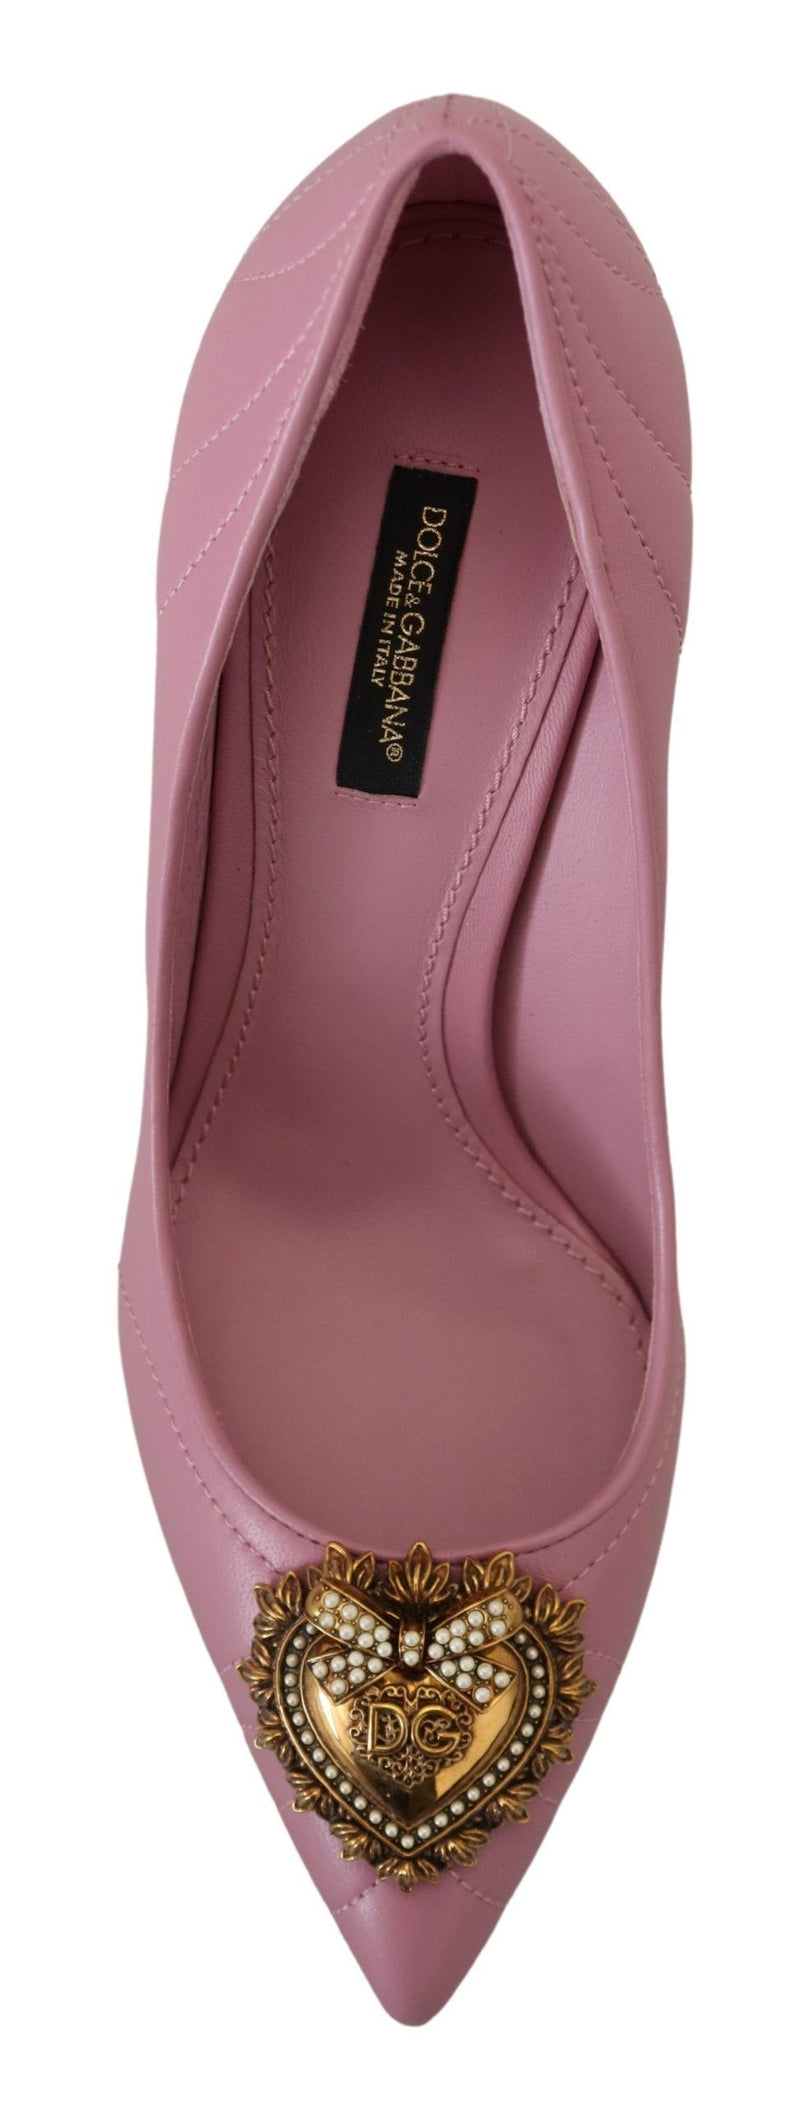 Dolce & Gabbana Devotion Leather Heels in Women's Pink